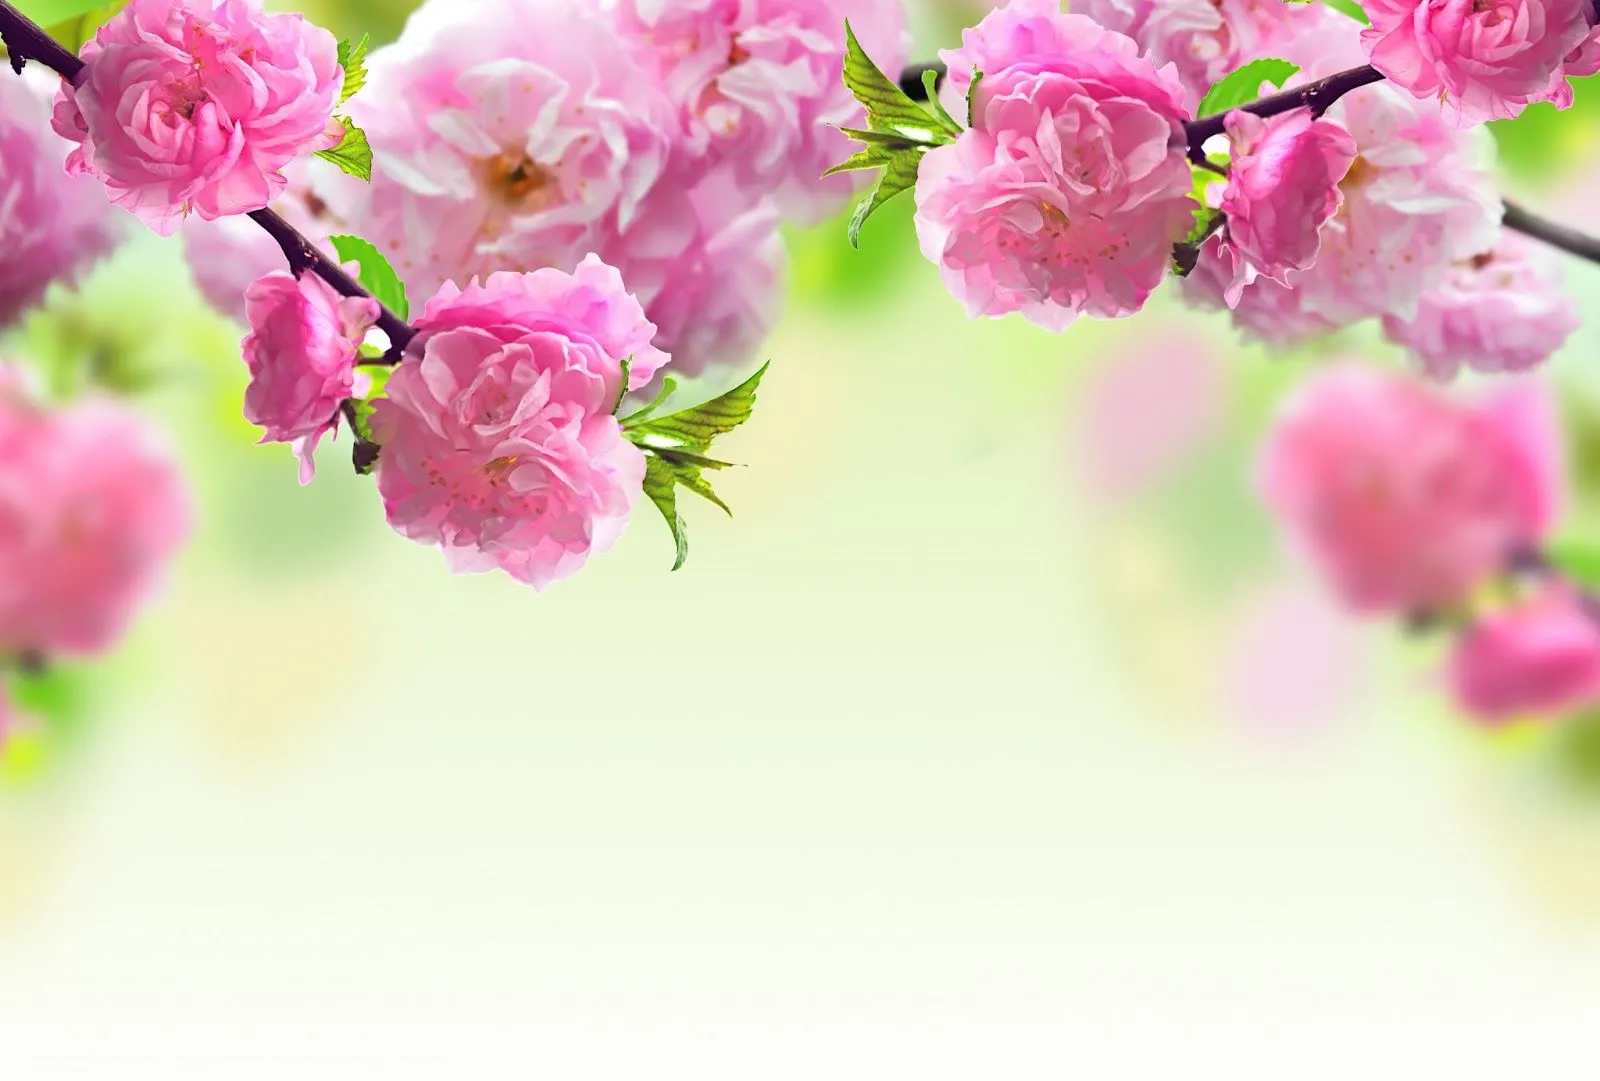 FOTOFRONTERA: Flores color rosa de árboles frutales